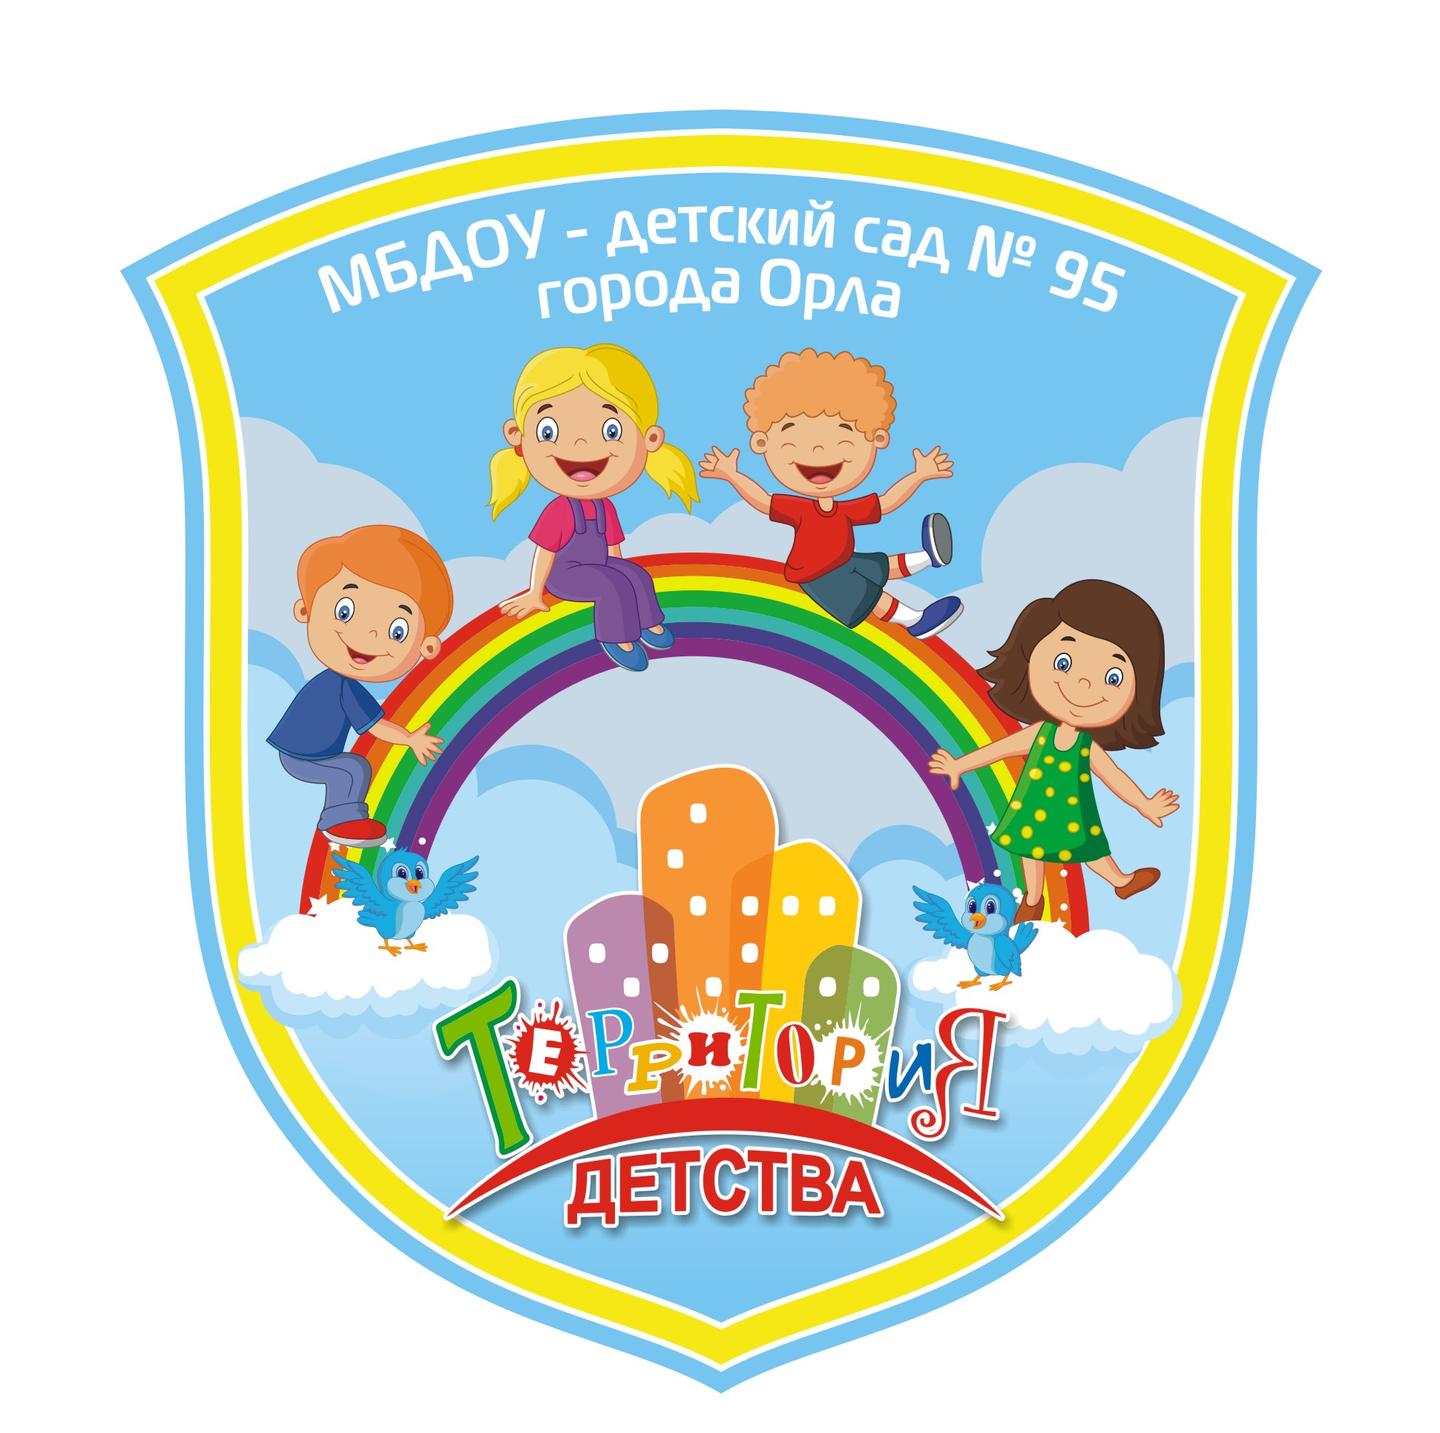 МБДОУ - детский сад № 95 города Орла